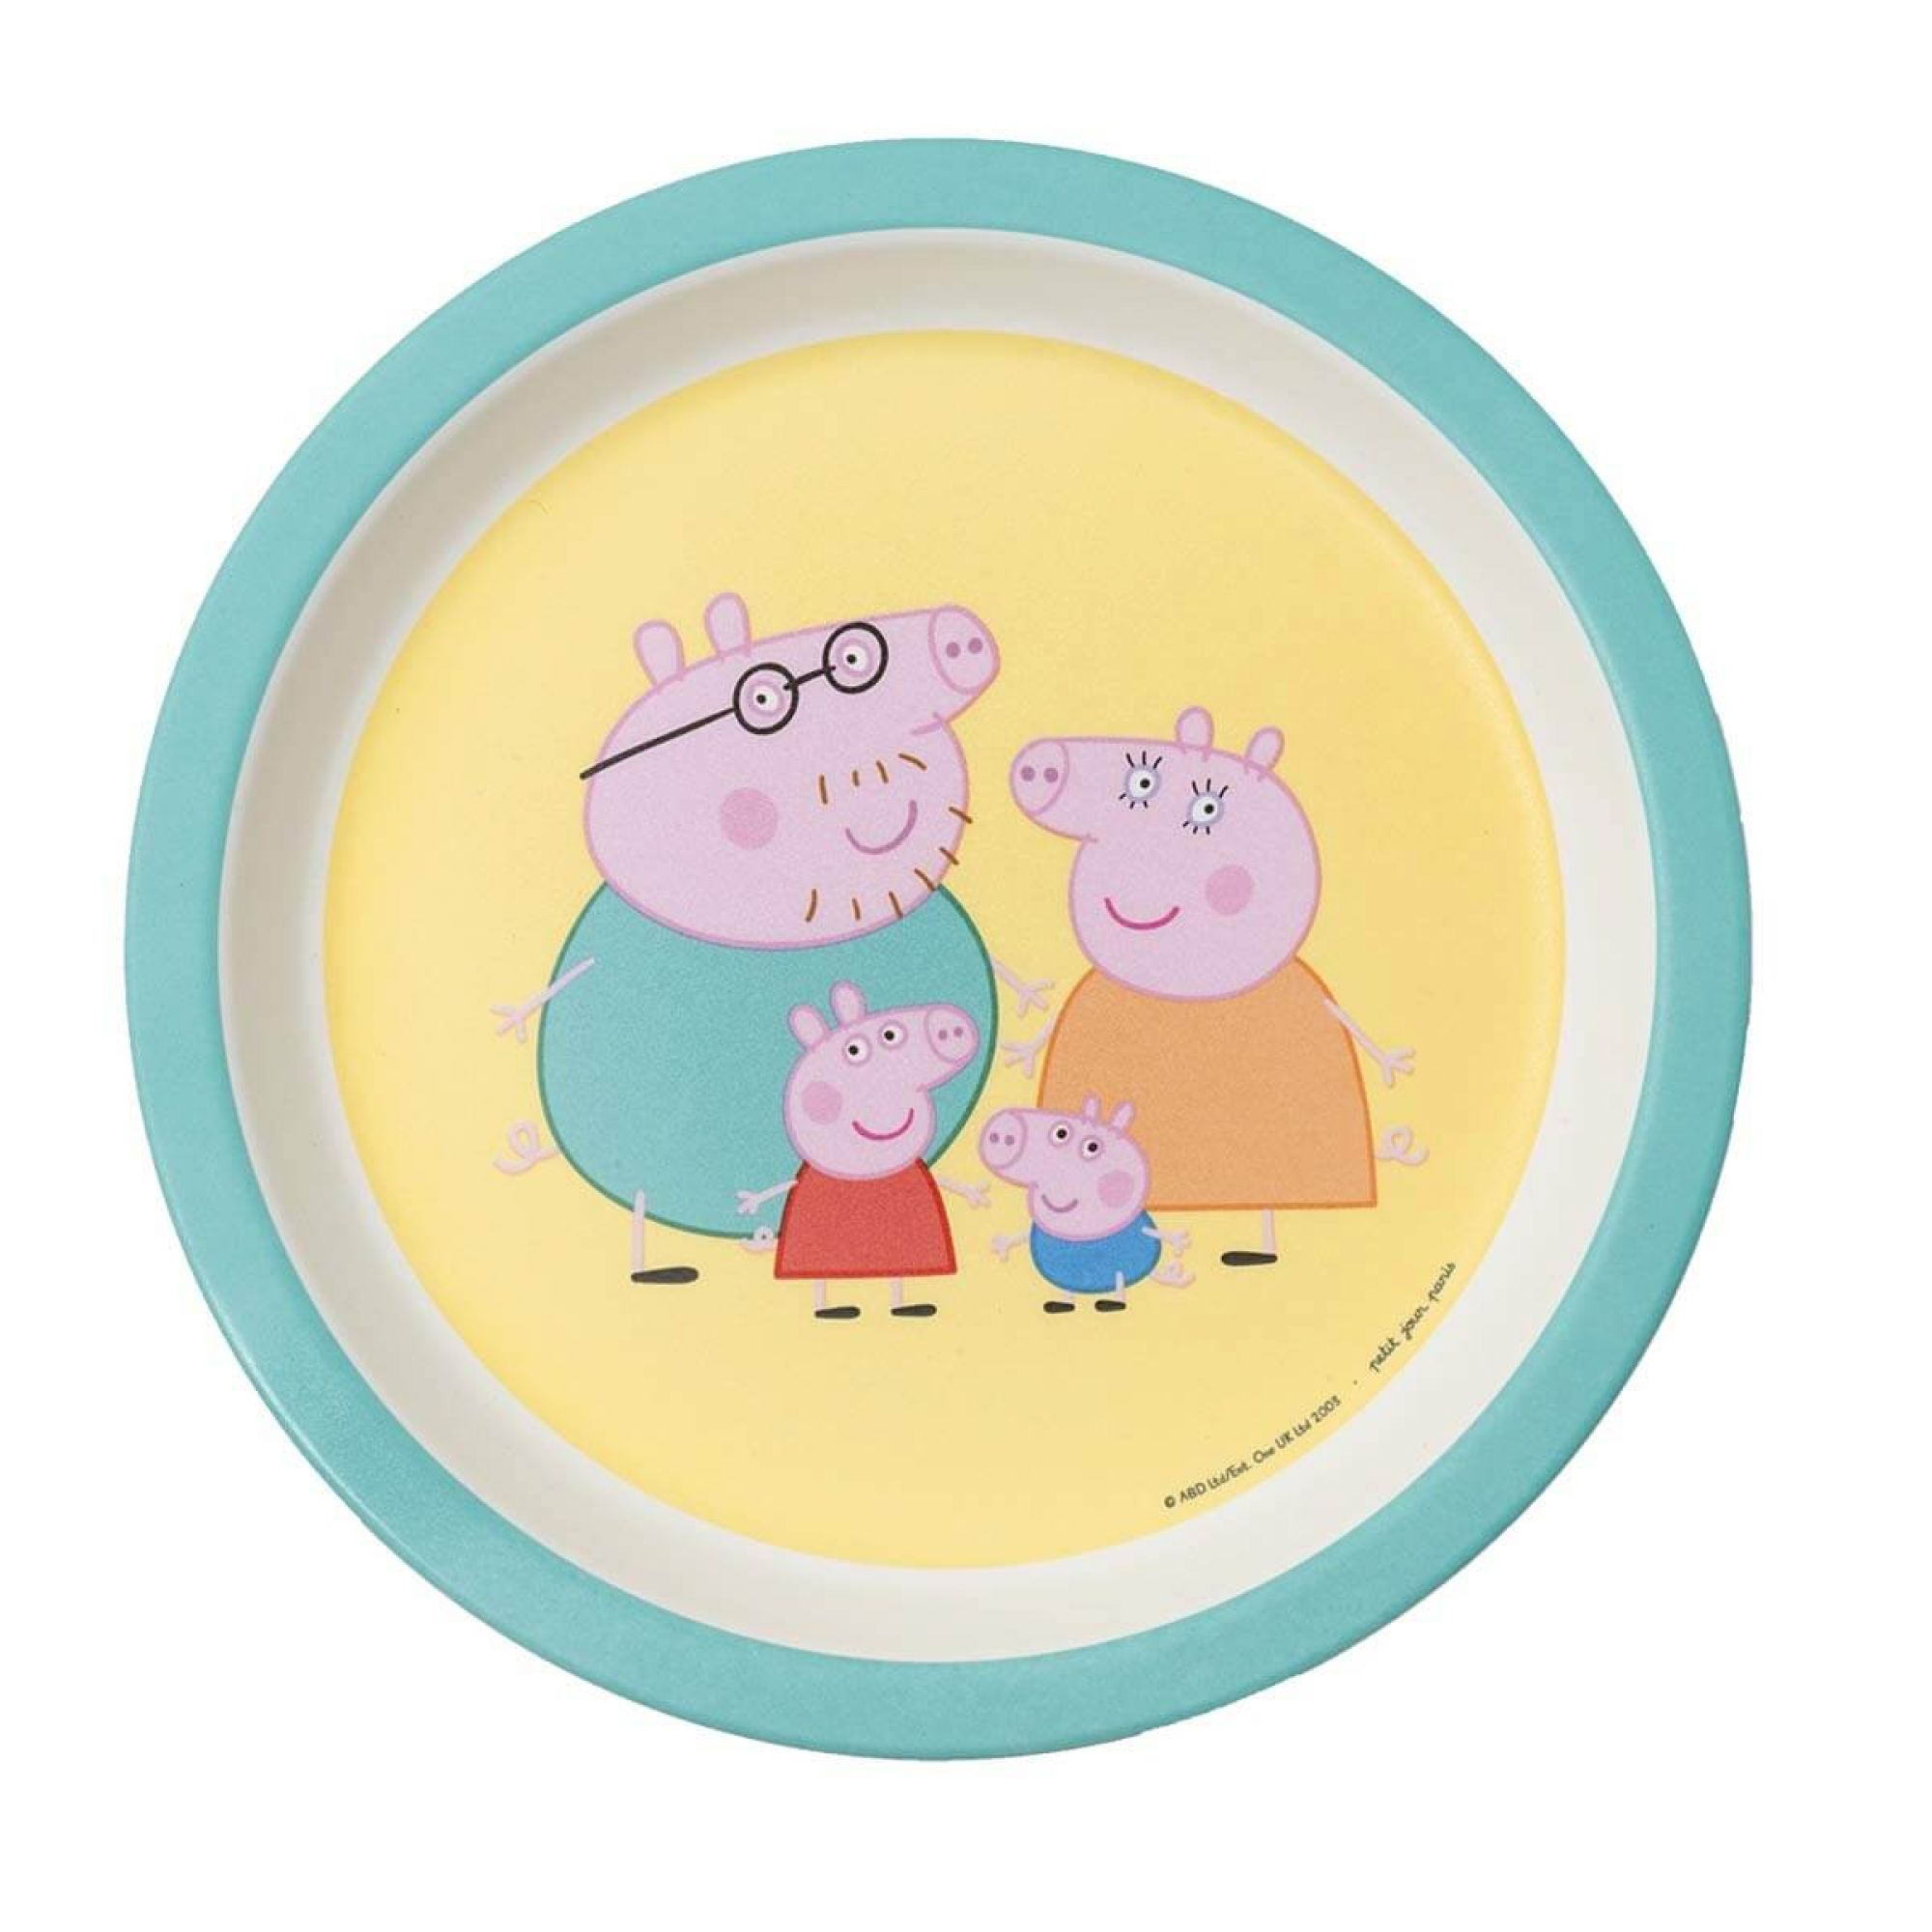 Cahier De Dessin Peppa Pig Livre De Coloriage Stickers Regle